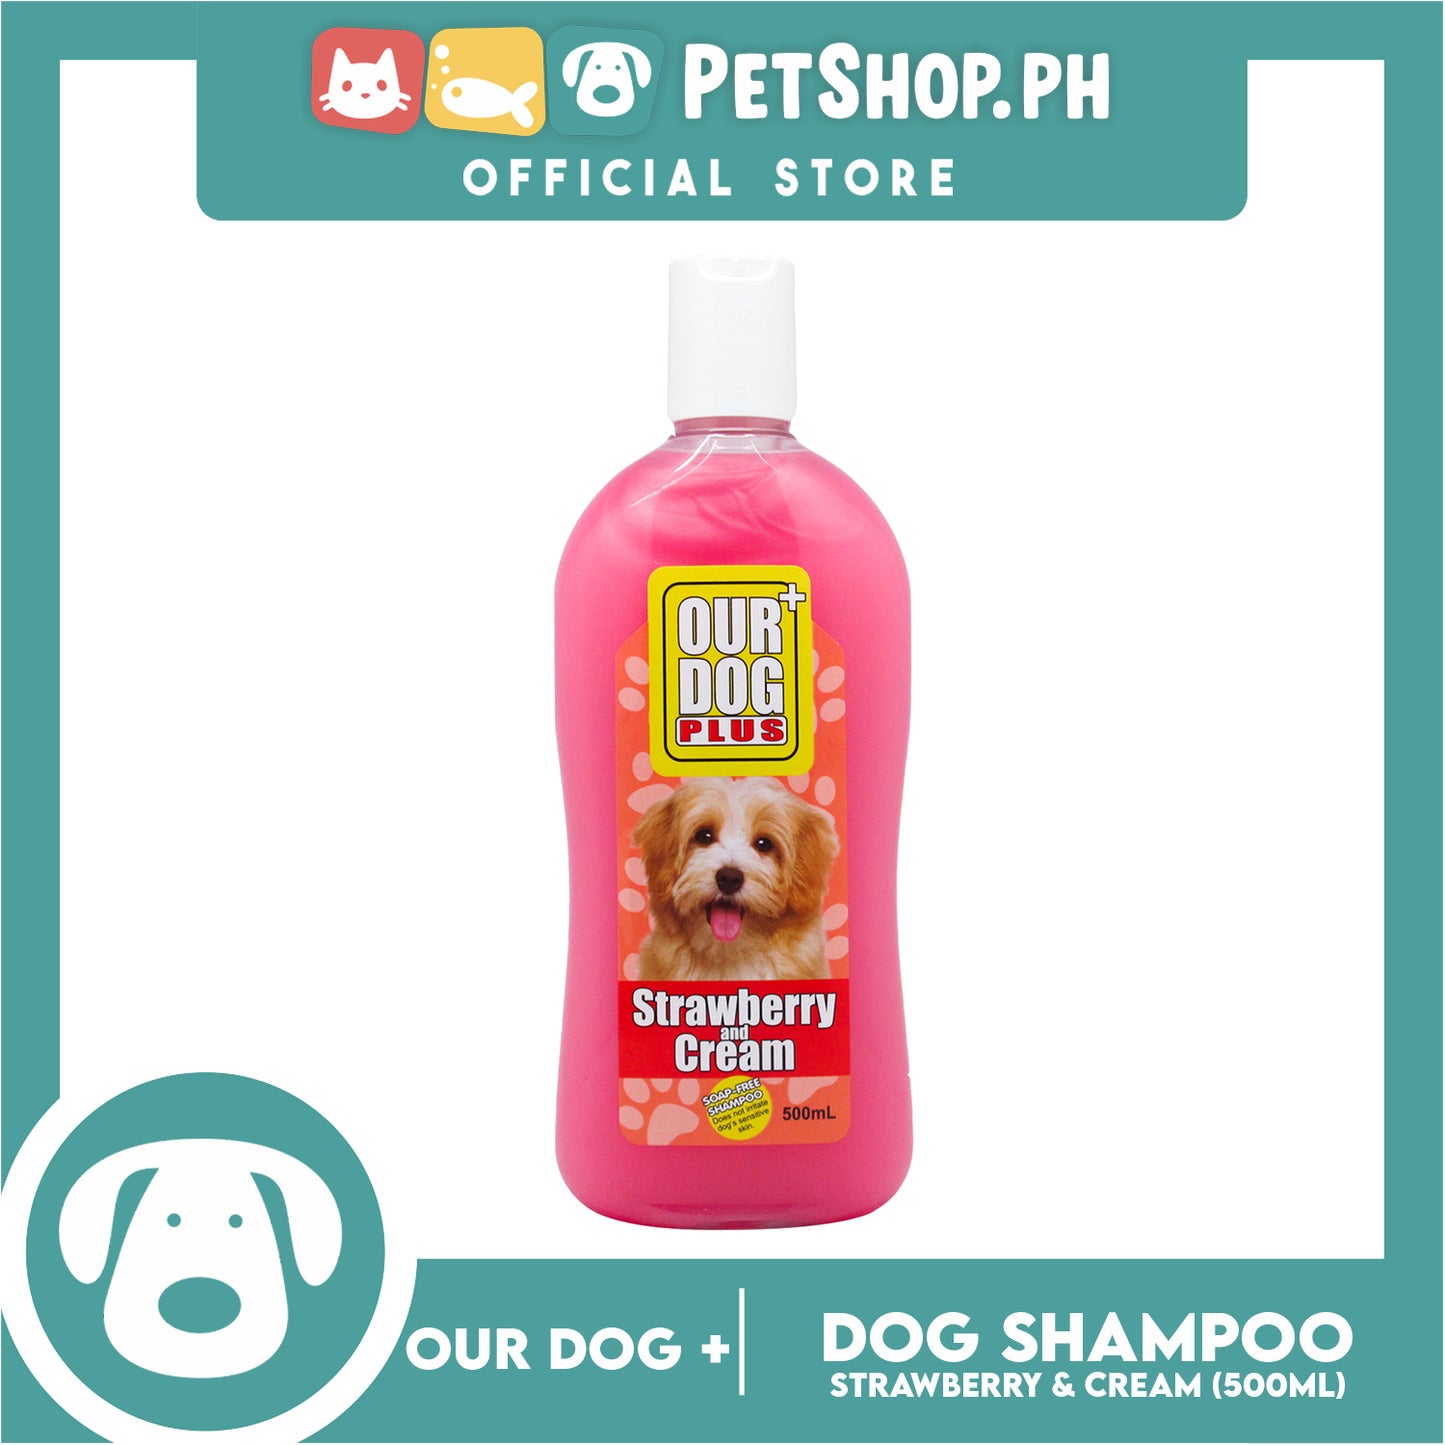 Our Dog Plus Strawberry and Cream Shampoo